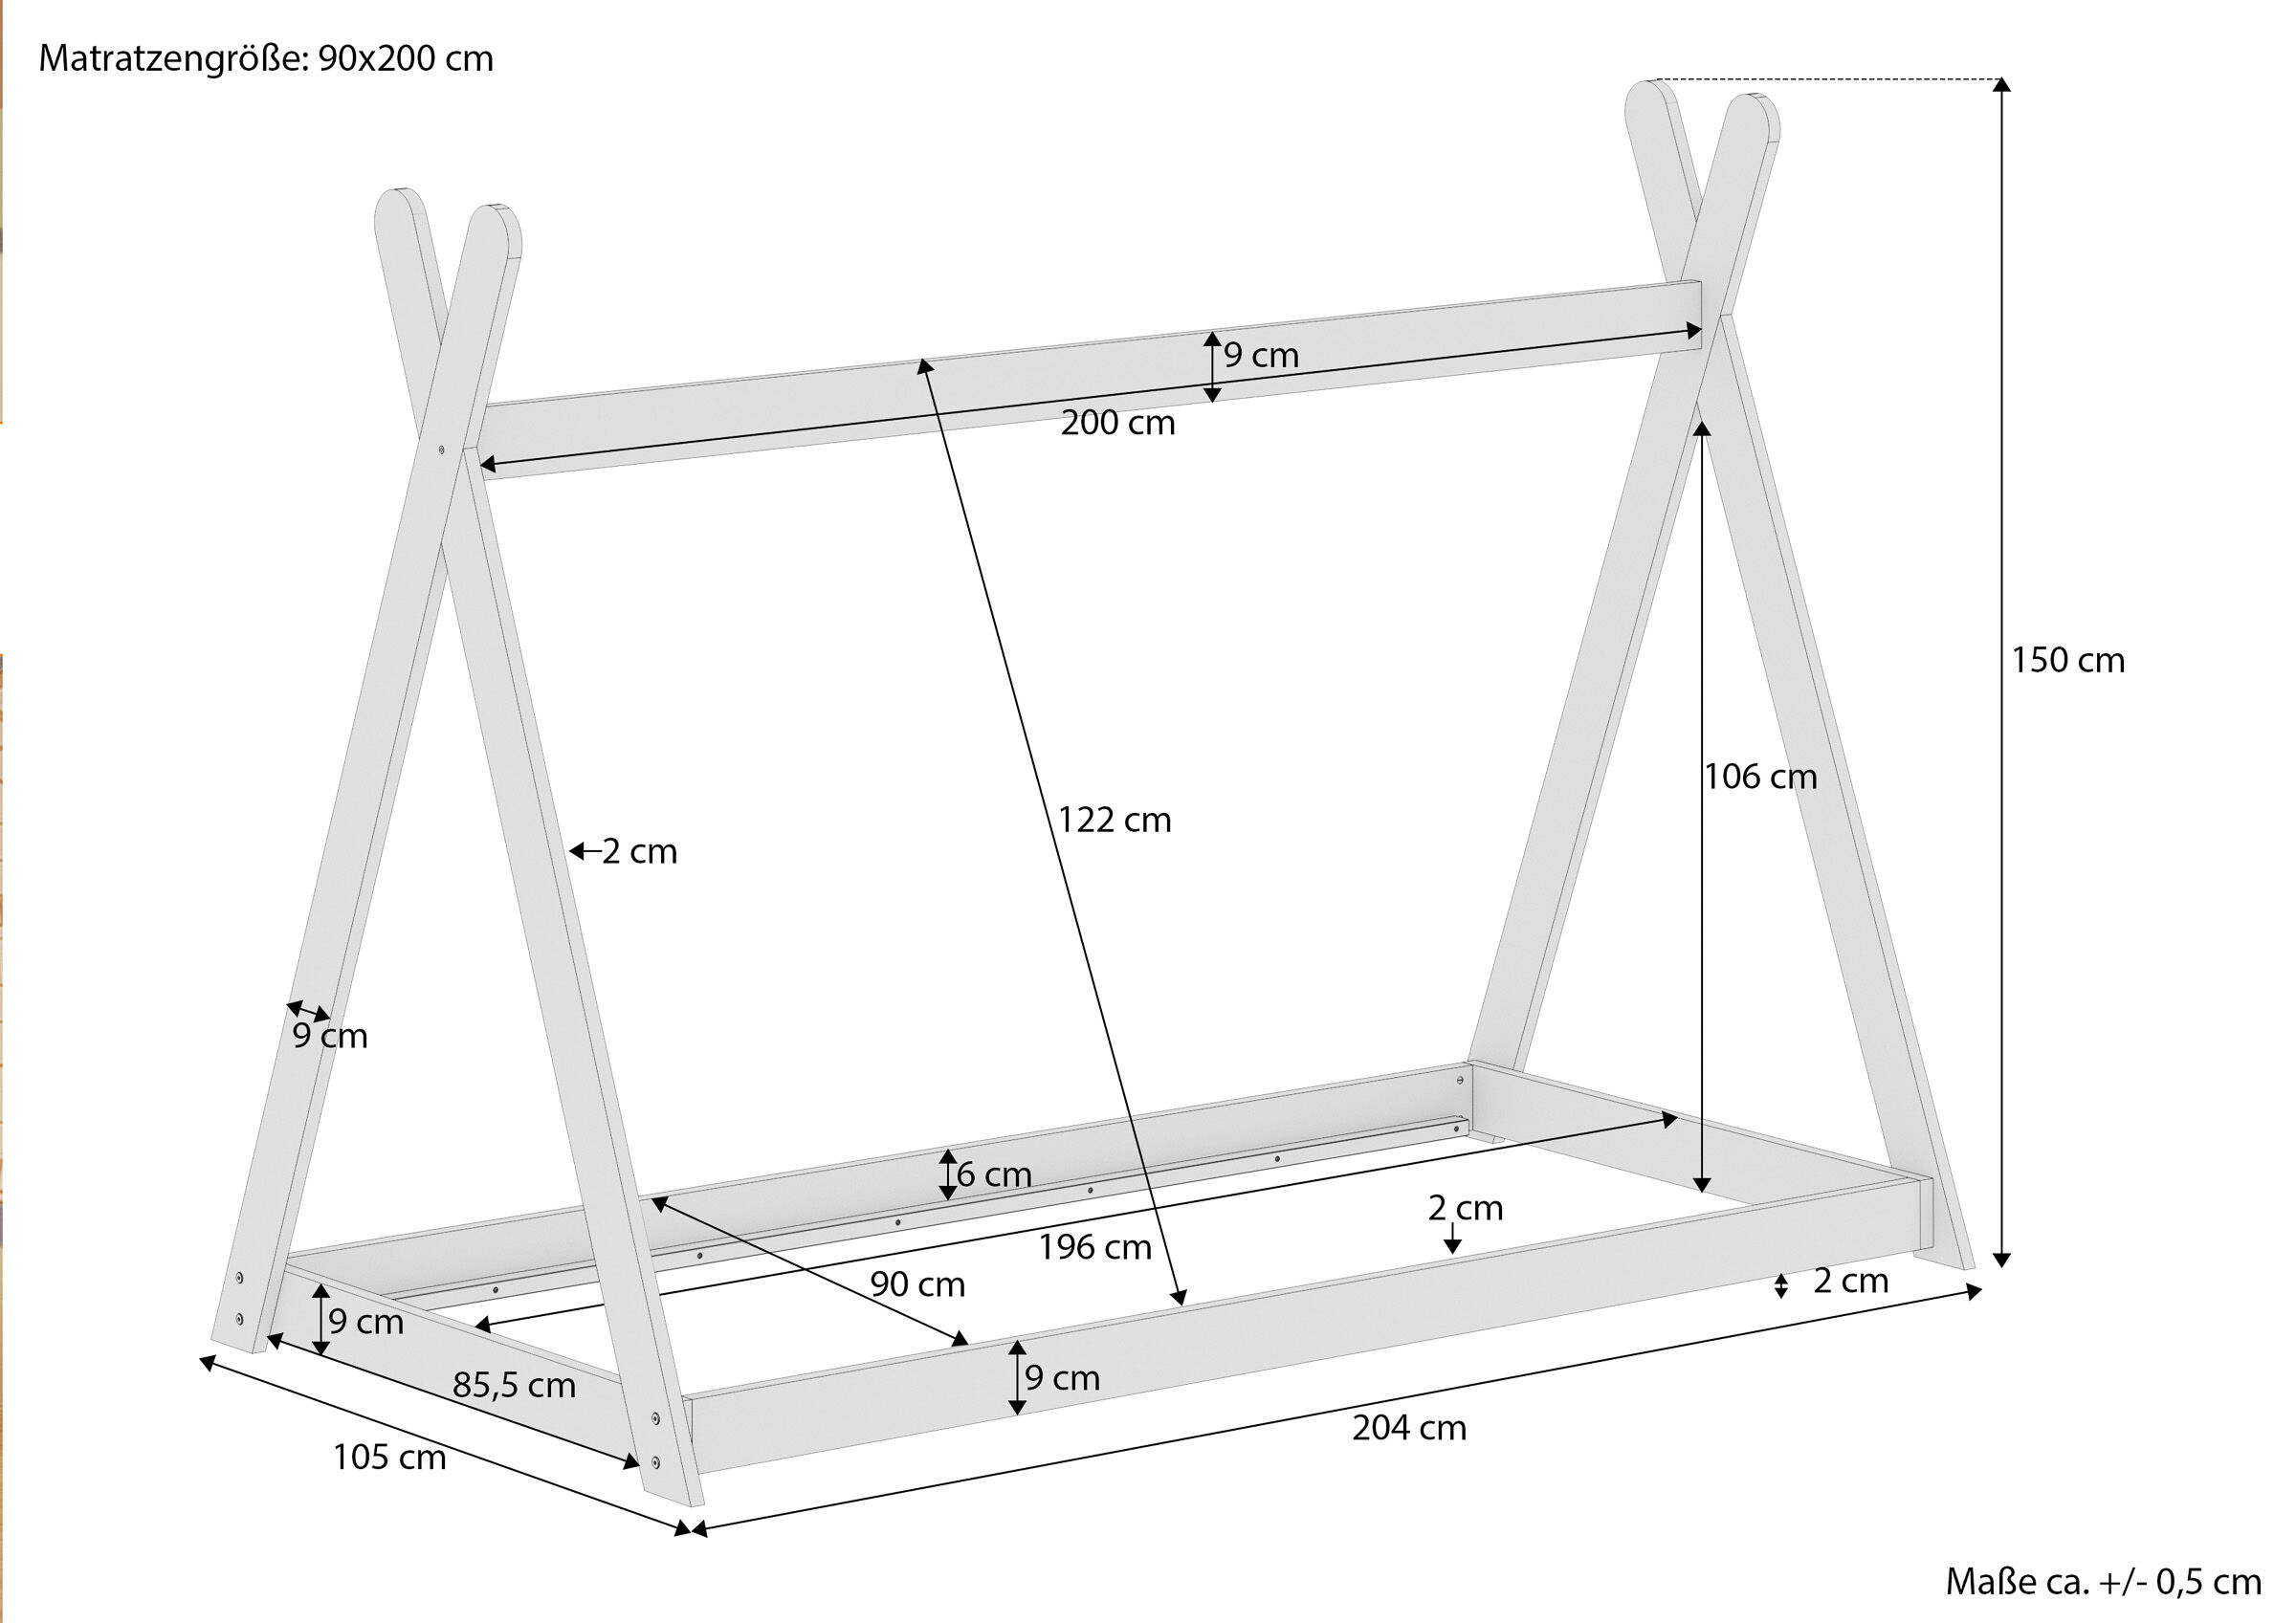 Maße des Einzelbettes in Tipi-Form 90x200